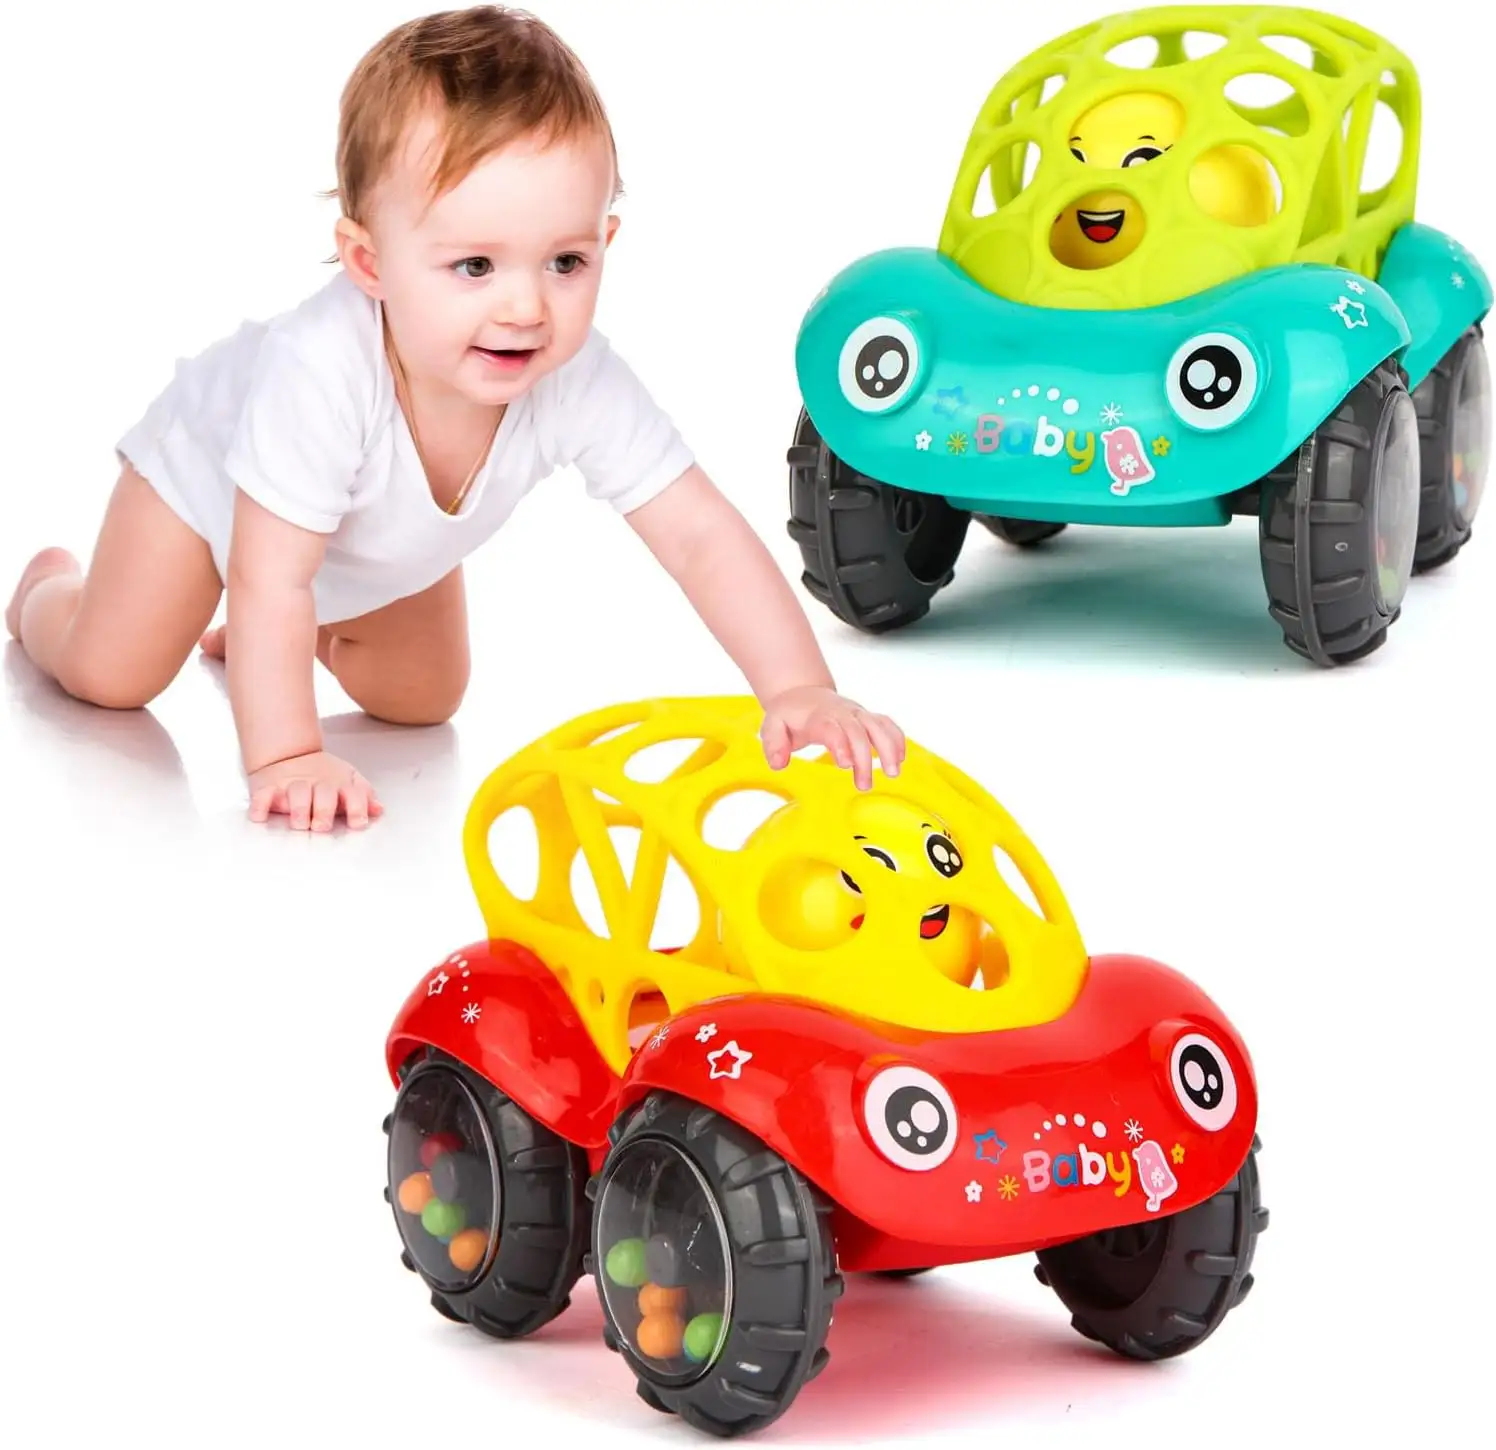 बच्चे की कार खिलौने आसान समझ में चपटी और रोल खिलौना स्पोर्ट्स कार शिशु क्रॉलिंग खिलौना वापस छोटे वाहन